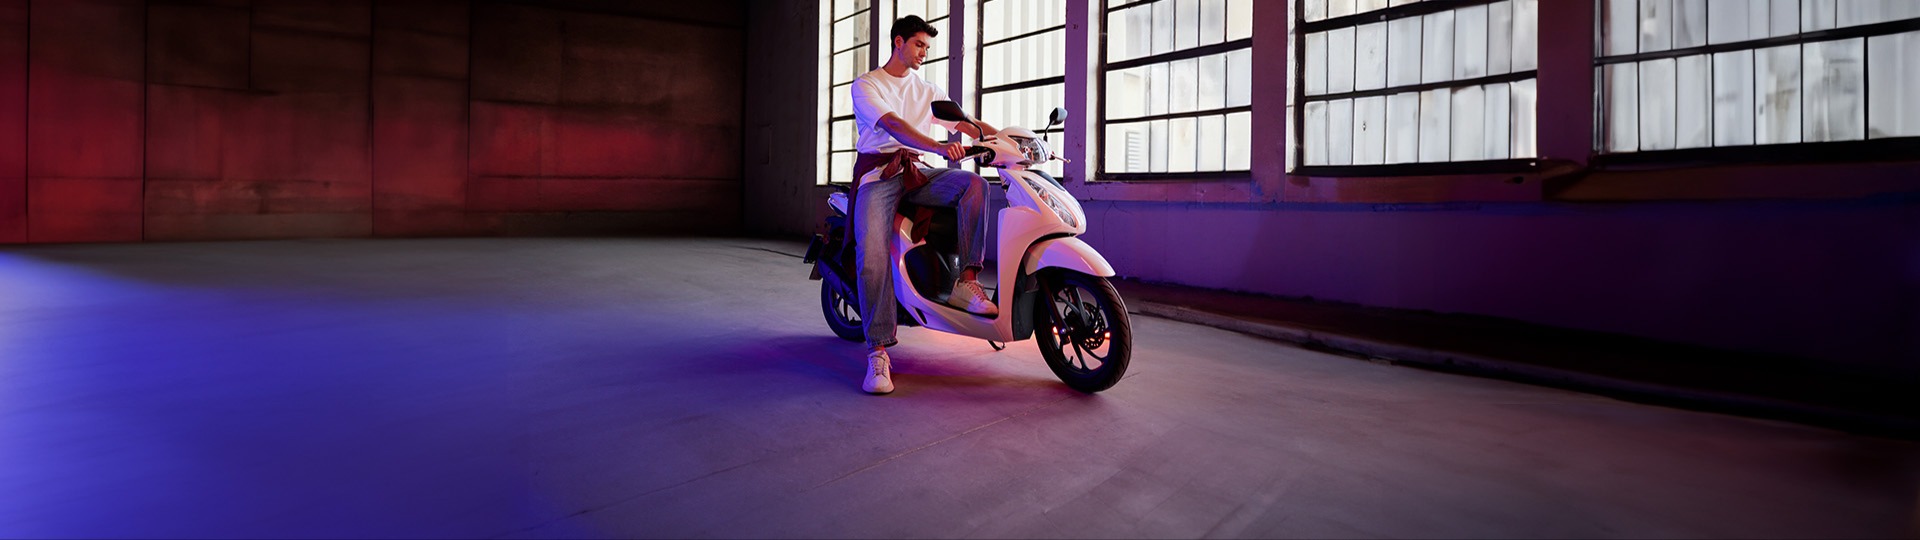  Sucular Motor 40.000 TL’ye vade farksız 12 ay taksitle sizin de ilk motosikletiniz Honda Dio olsun.